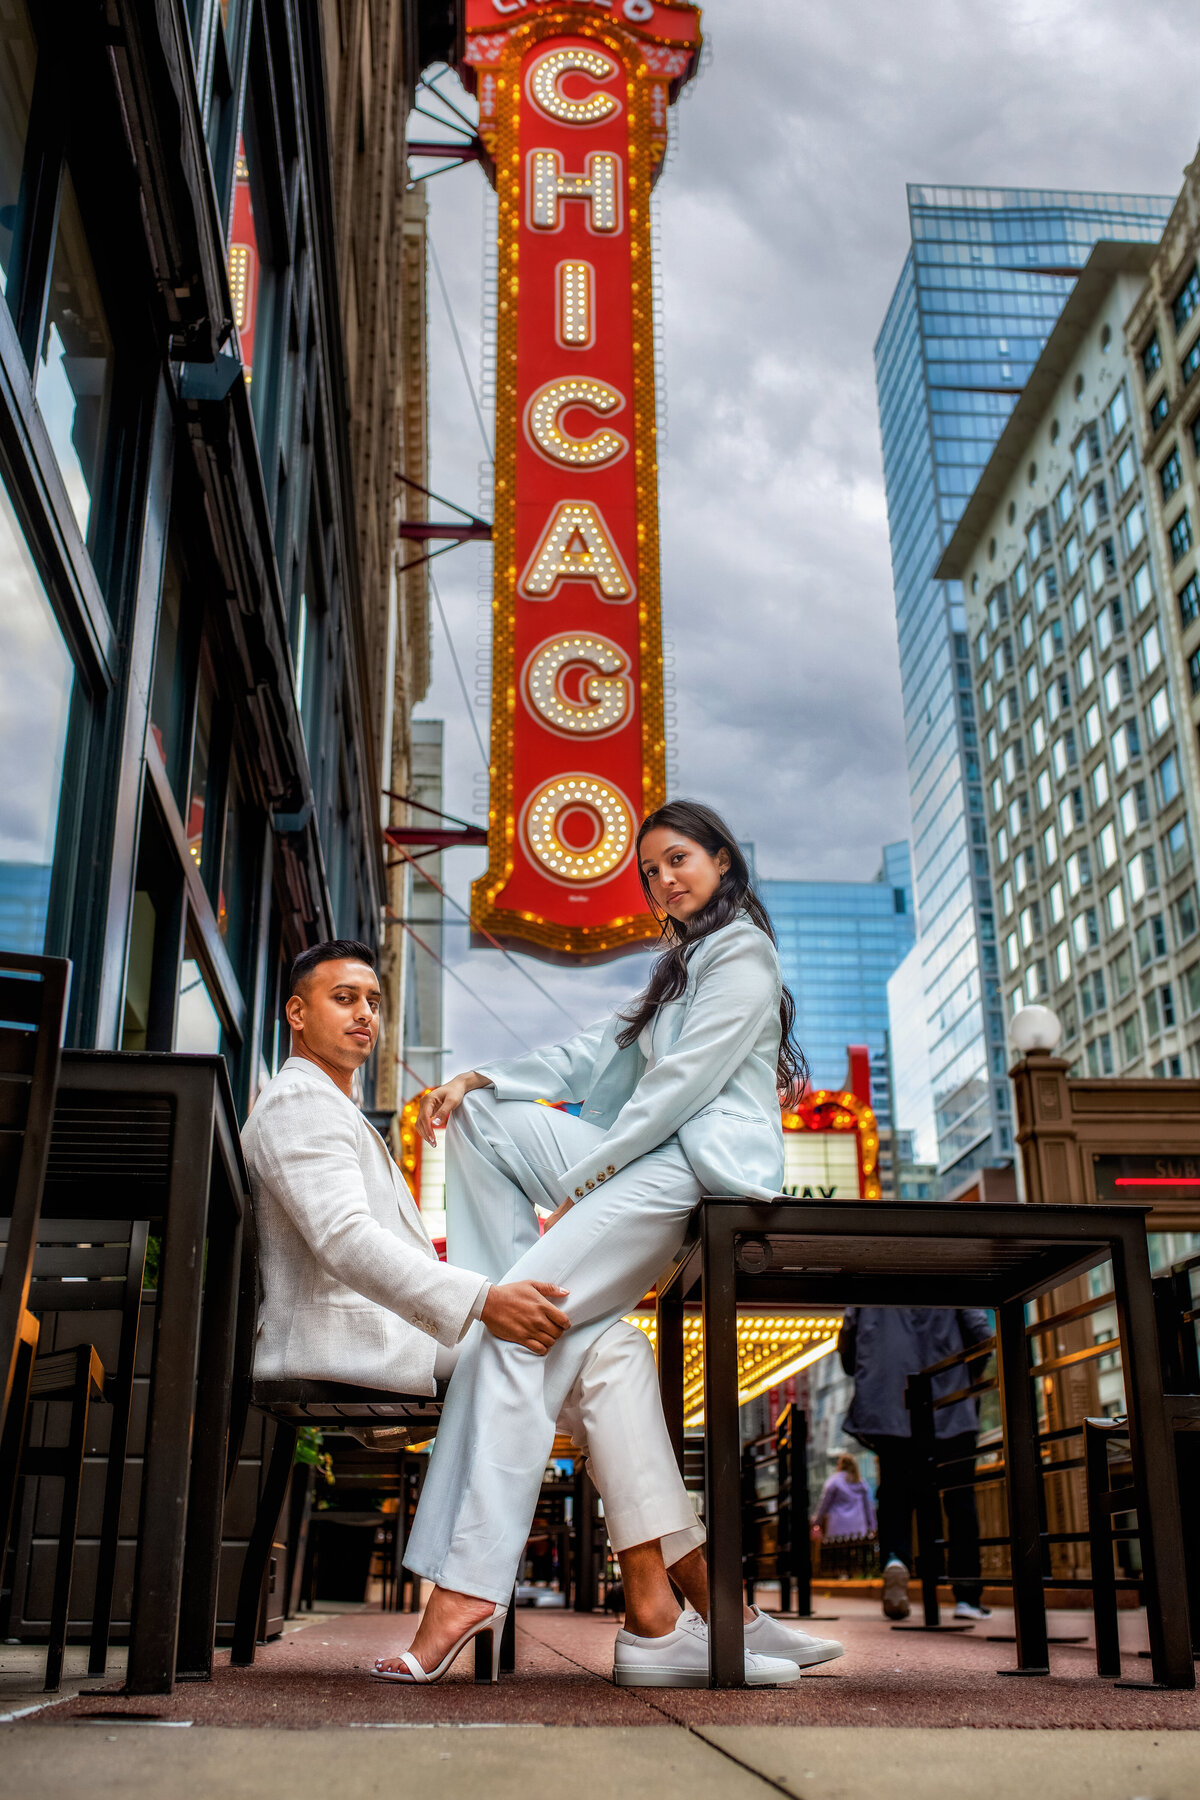 Stylish engagement fashion photoshoot by famous Chicago sign